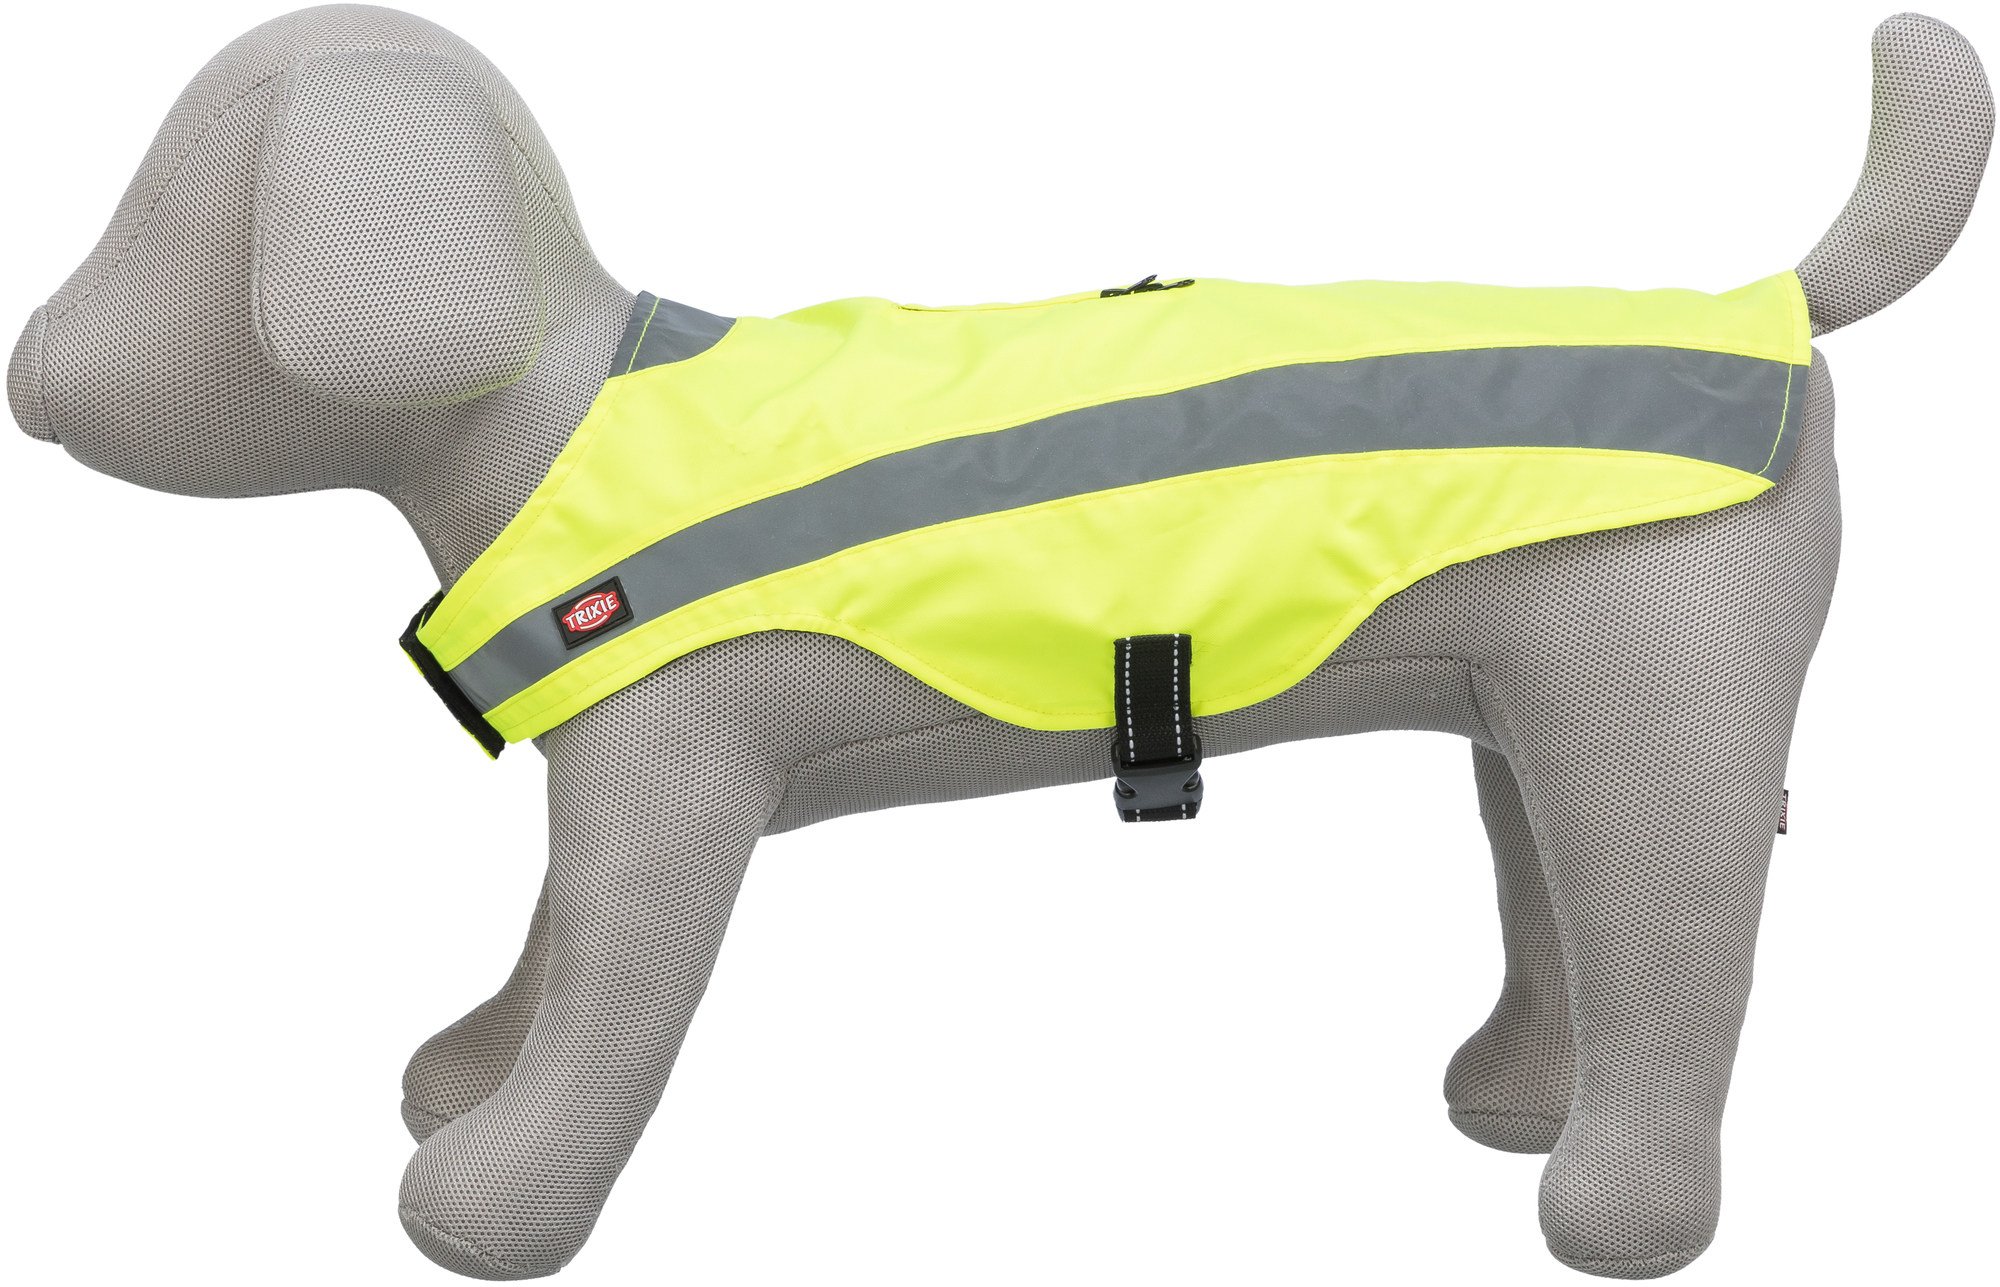 Gilet de sécurité jaune réfléchissant pour chien